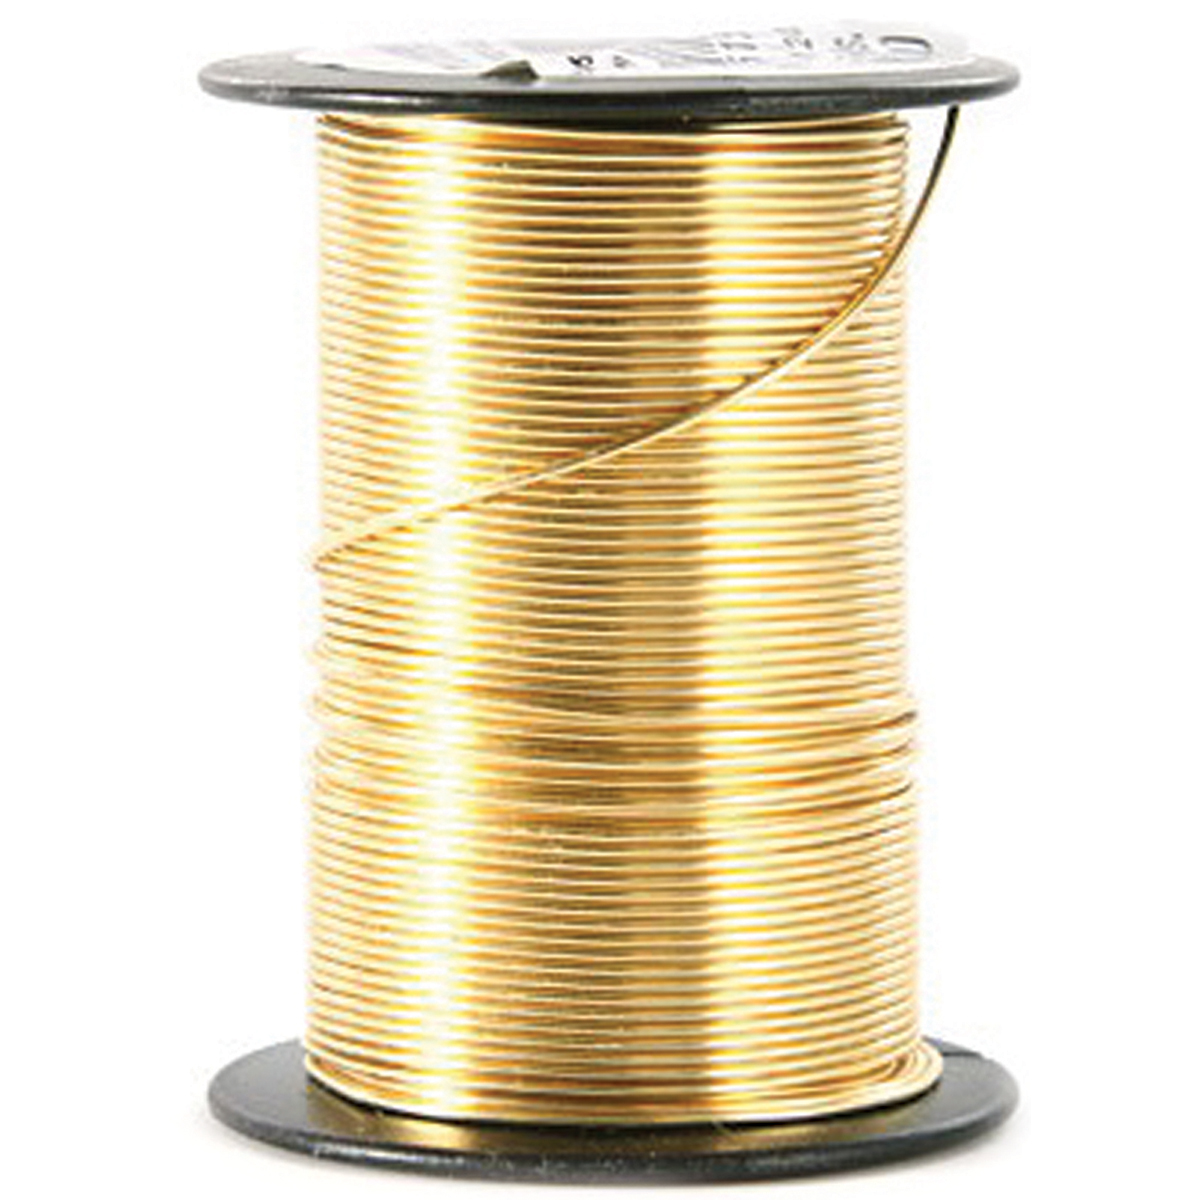 Brass wire - Buy now »